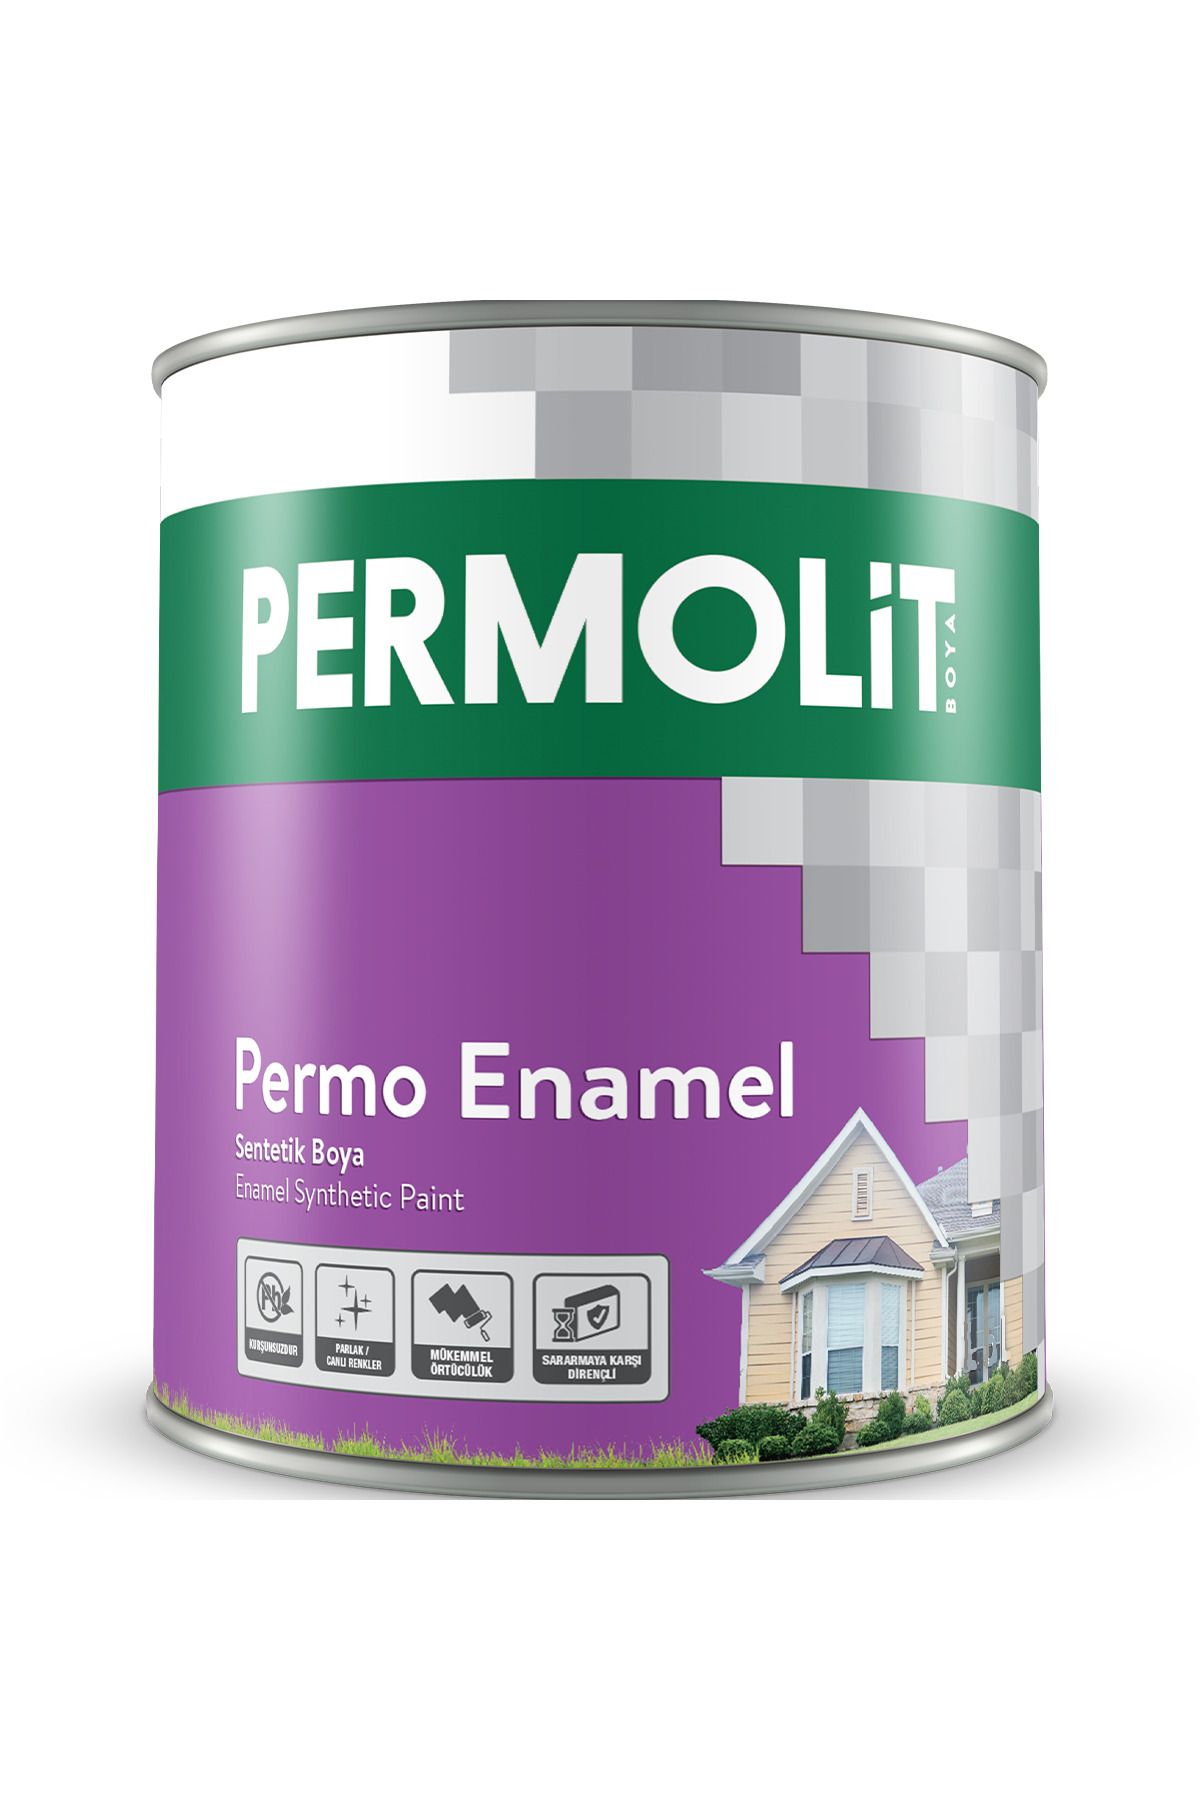 Permolit Permo Enamel Pastel Mavi Sentetik Boya 2,5 Lt. 35 Farklı Renk